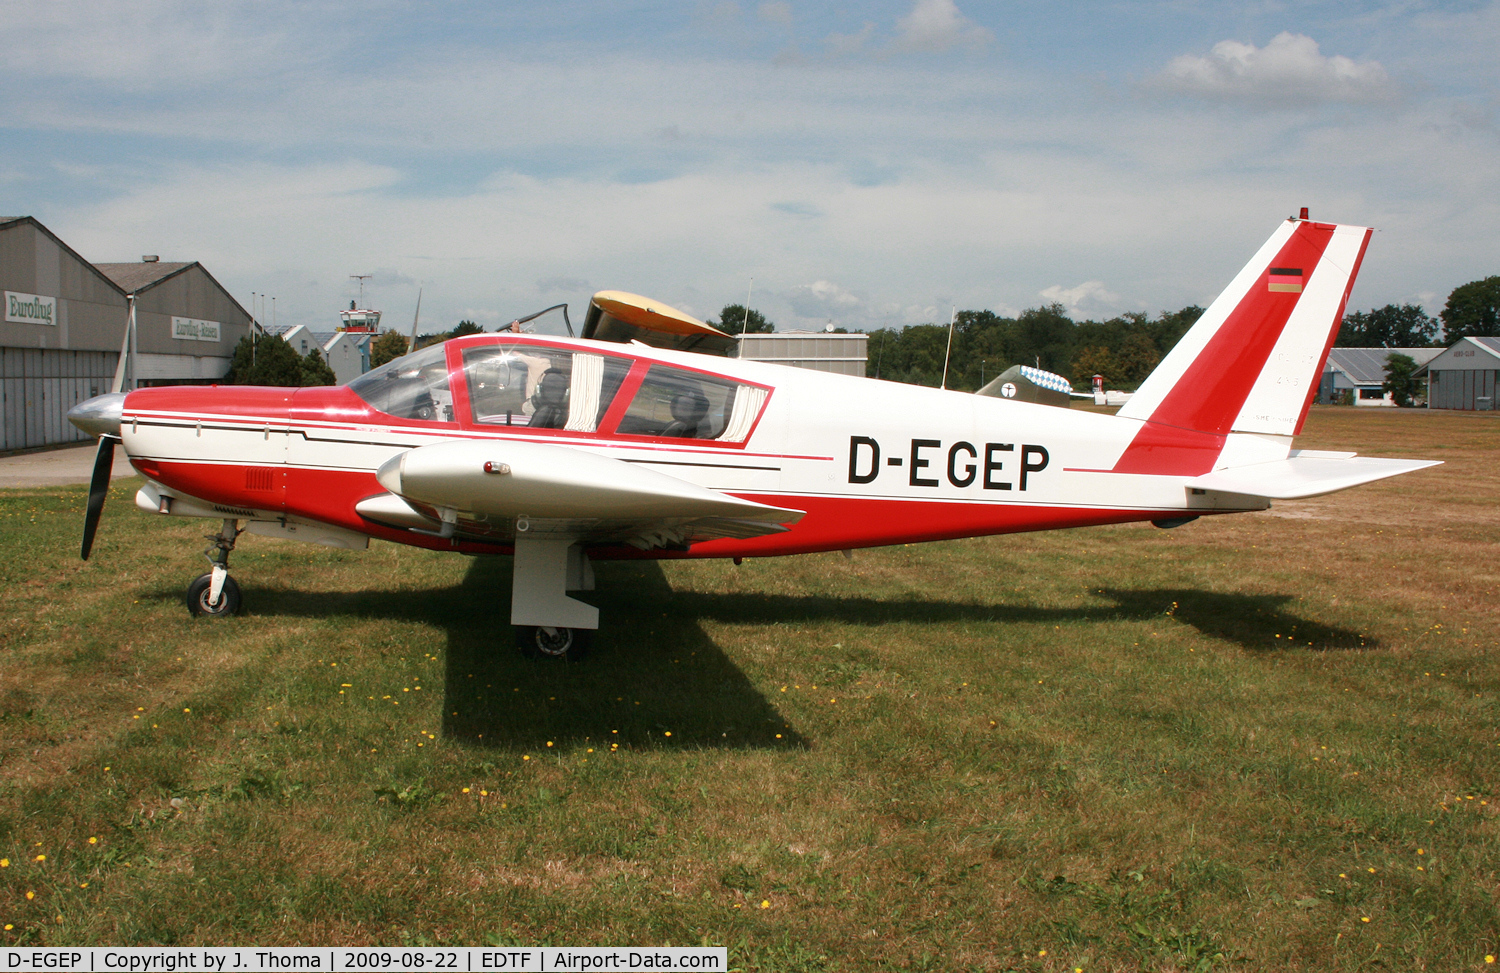 D-EGEP, Wassmer (Cerva) CE-43 Guepard C/N 435, Wassmer CE-43 Guepard